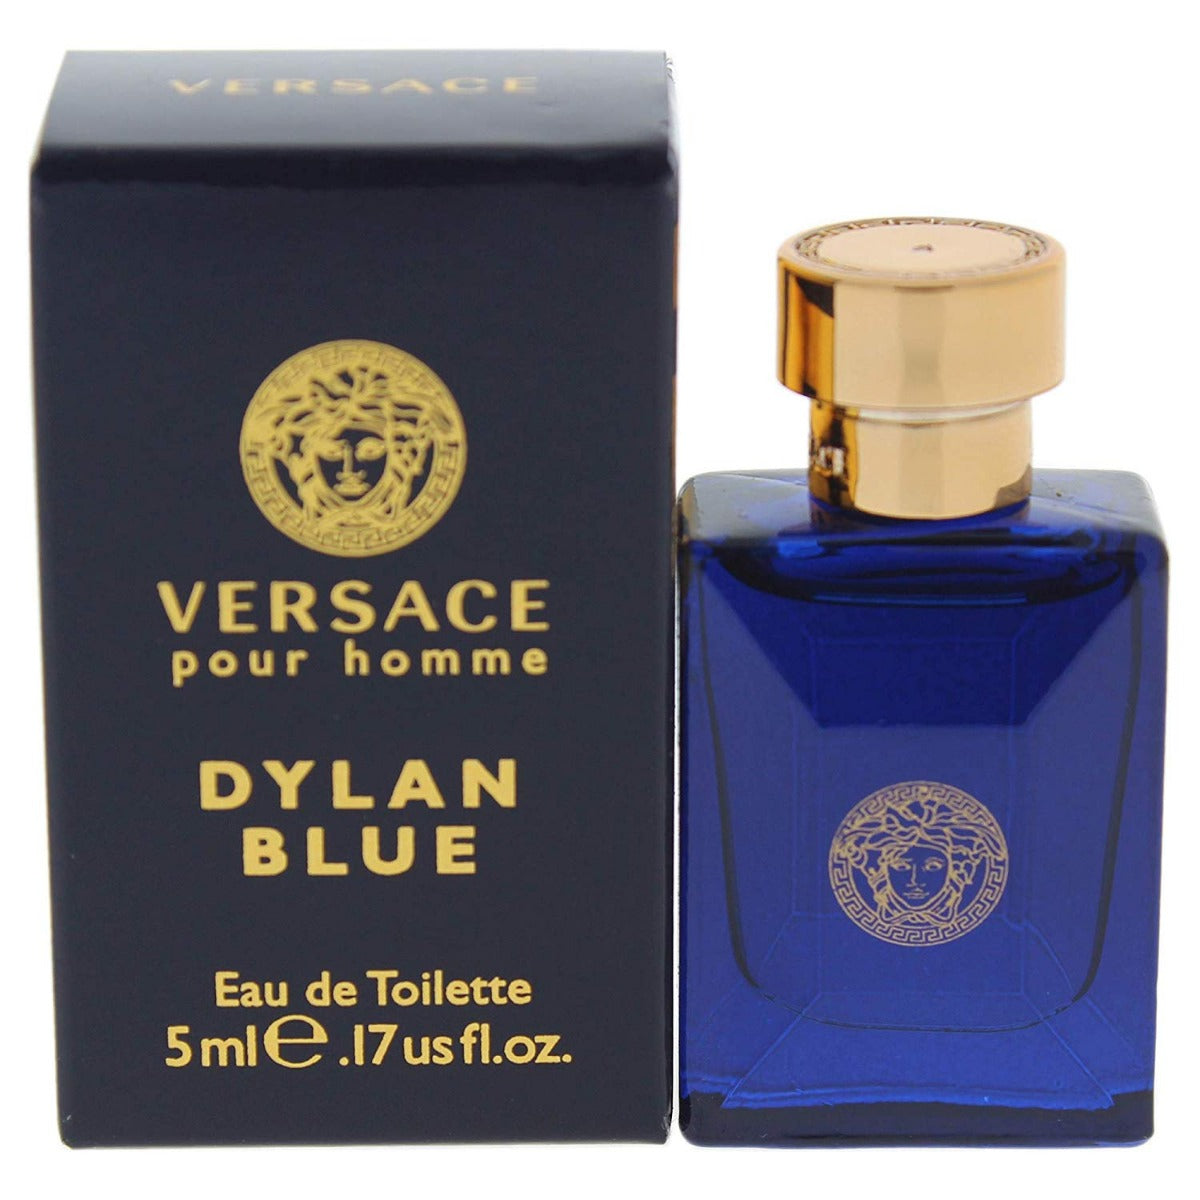 Versace Pour Homme Dylan Blue Miniature Perfume for Men - Eau de Toilette, 5 ml - samawa perfumes 